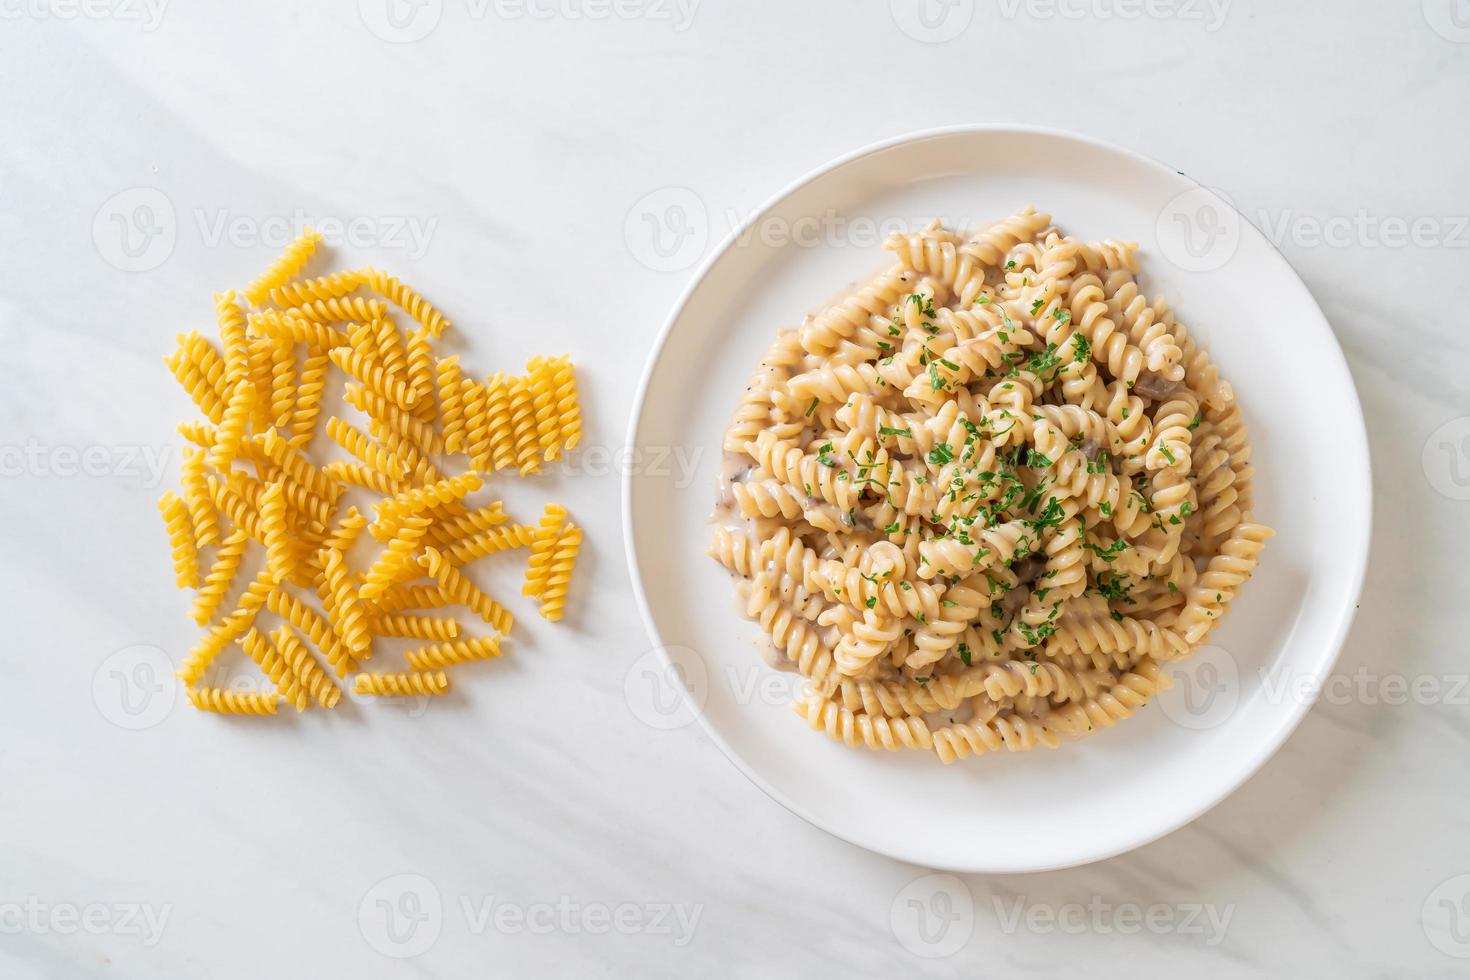 spirali ou pasta espiralada com molho de creme de cogumelos com salsa - comida italiana foto